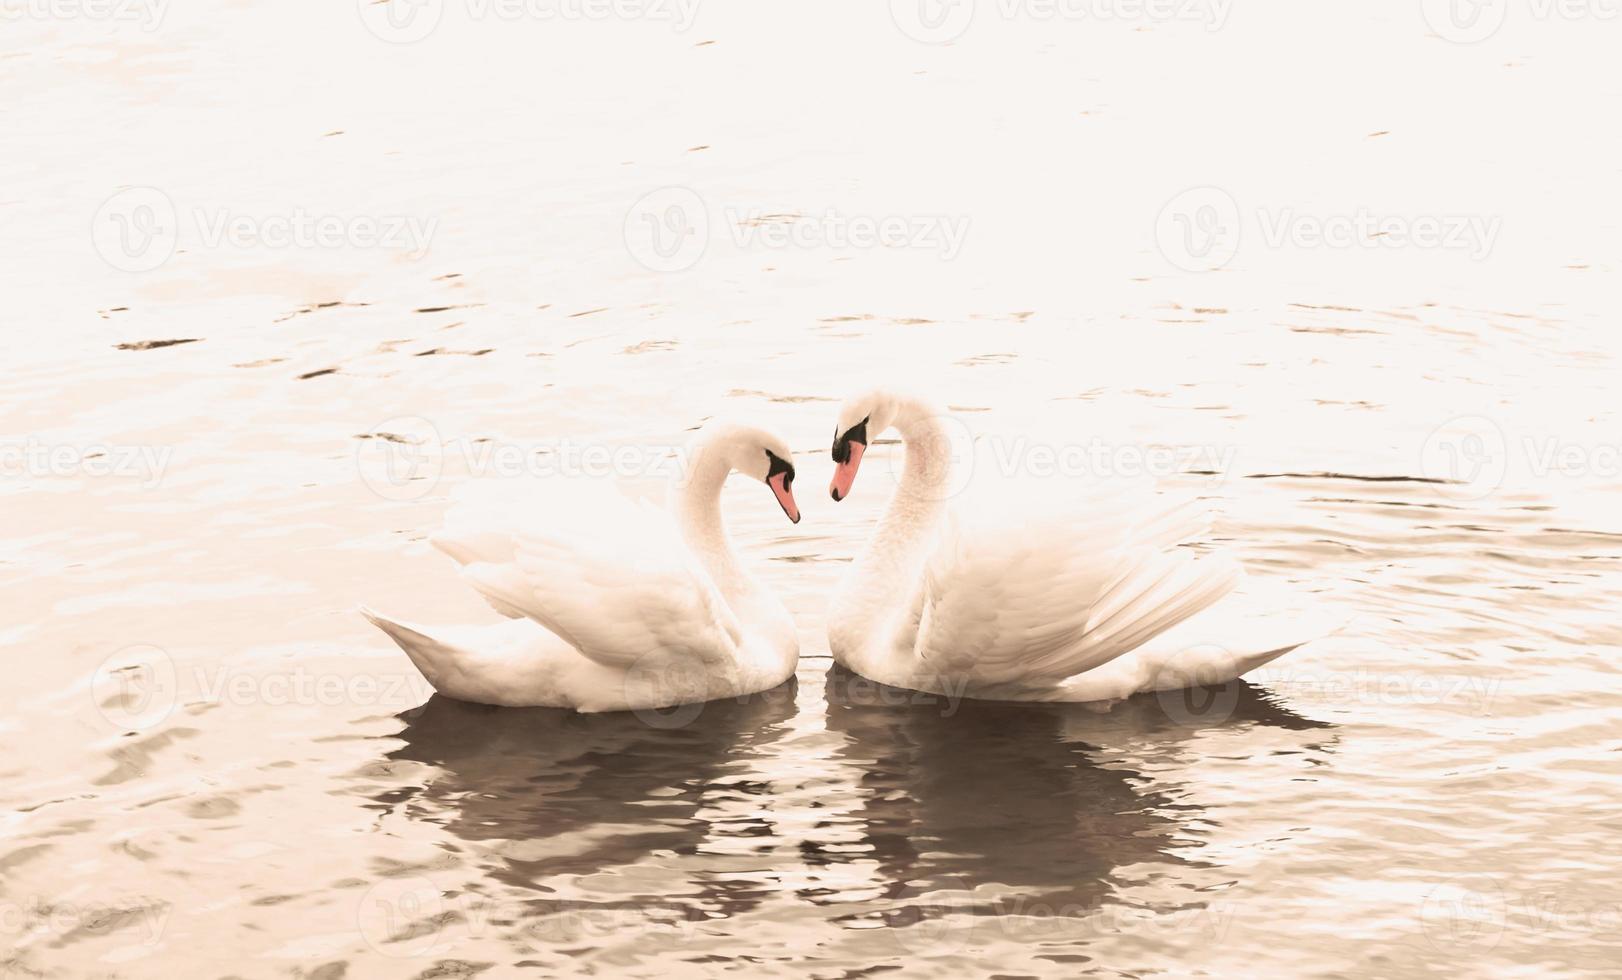 paar van wit zwanen zwemmen in de water. een symbool van liefde en trouw is twee zwanen maken een hart vorm geven aan. magisch landschap met wild vogel - Cygnus kleur. afgezwakt afbeelding, banier, kopiëren ruimte. foto